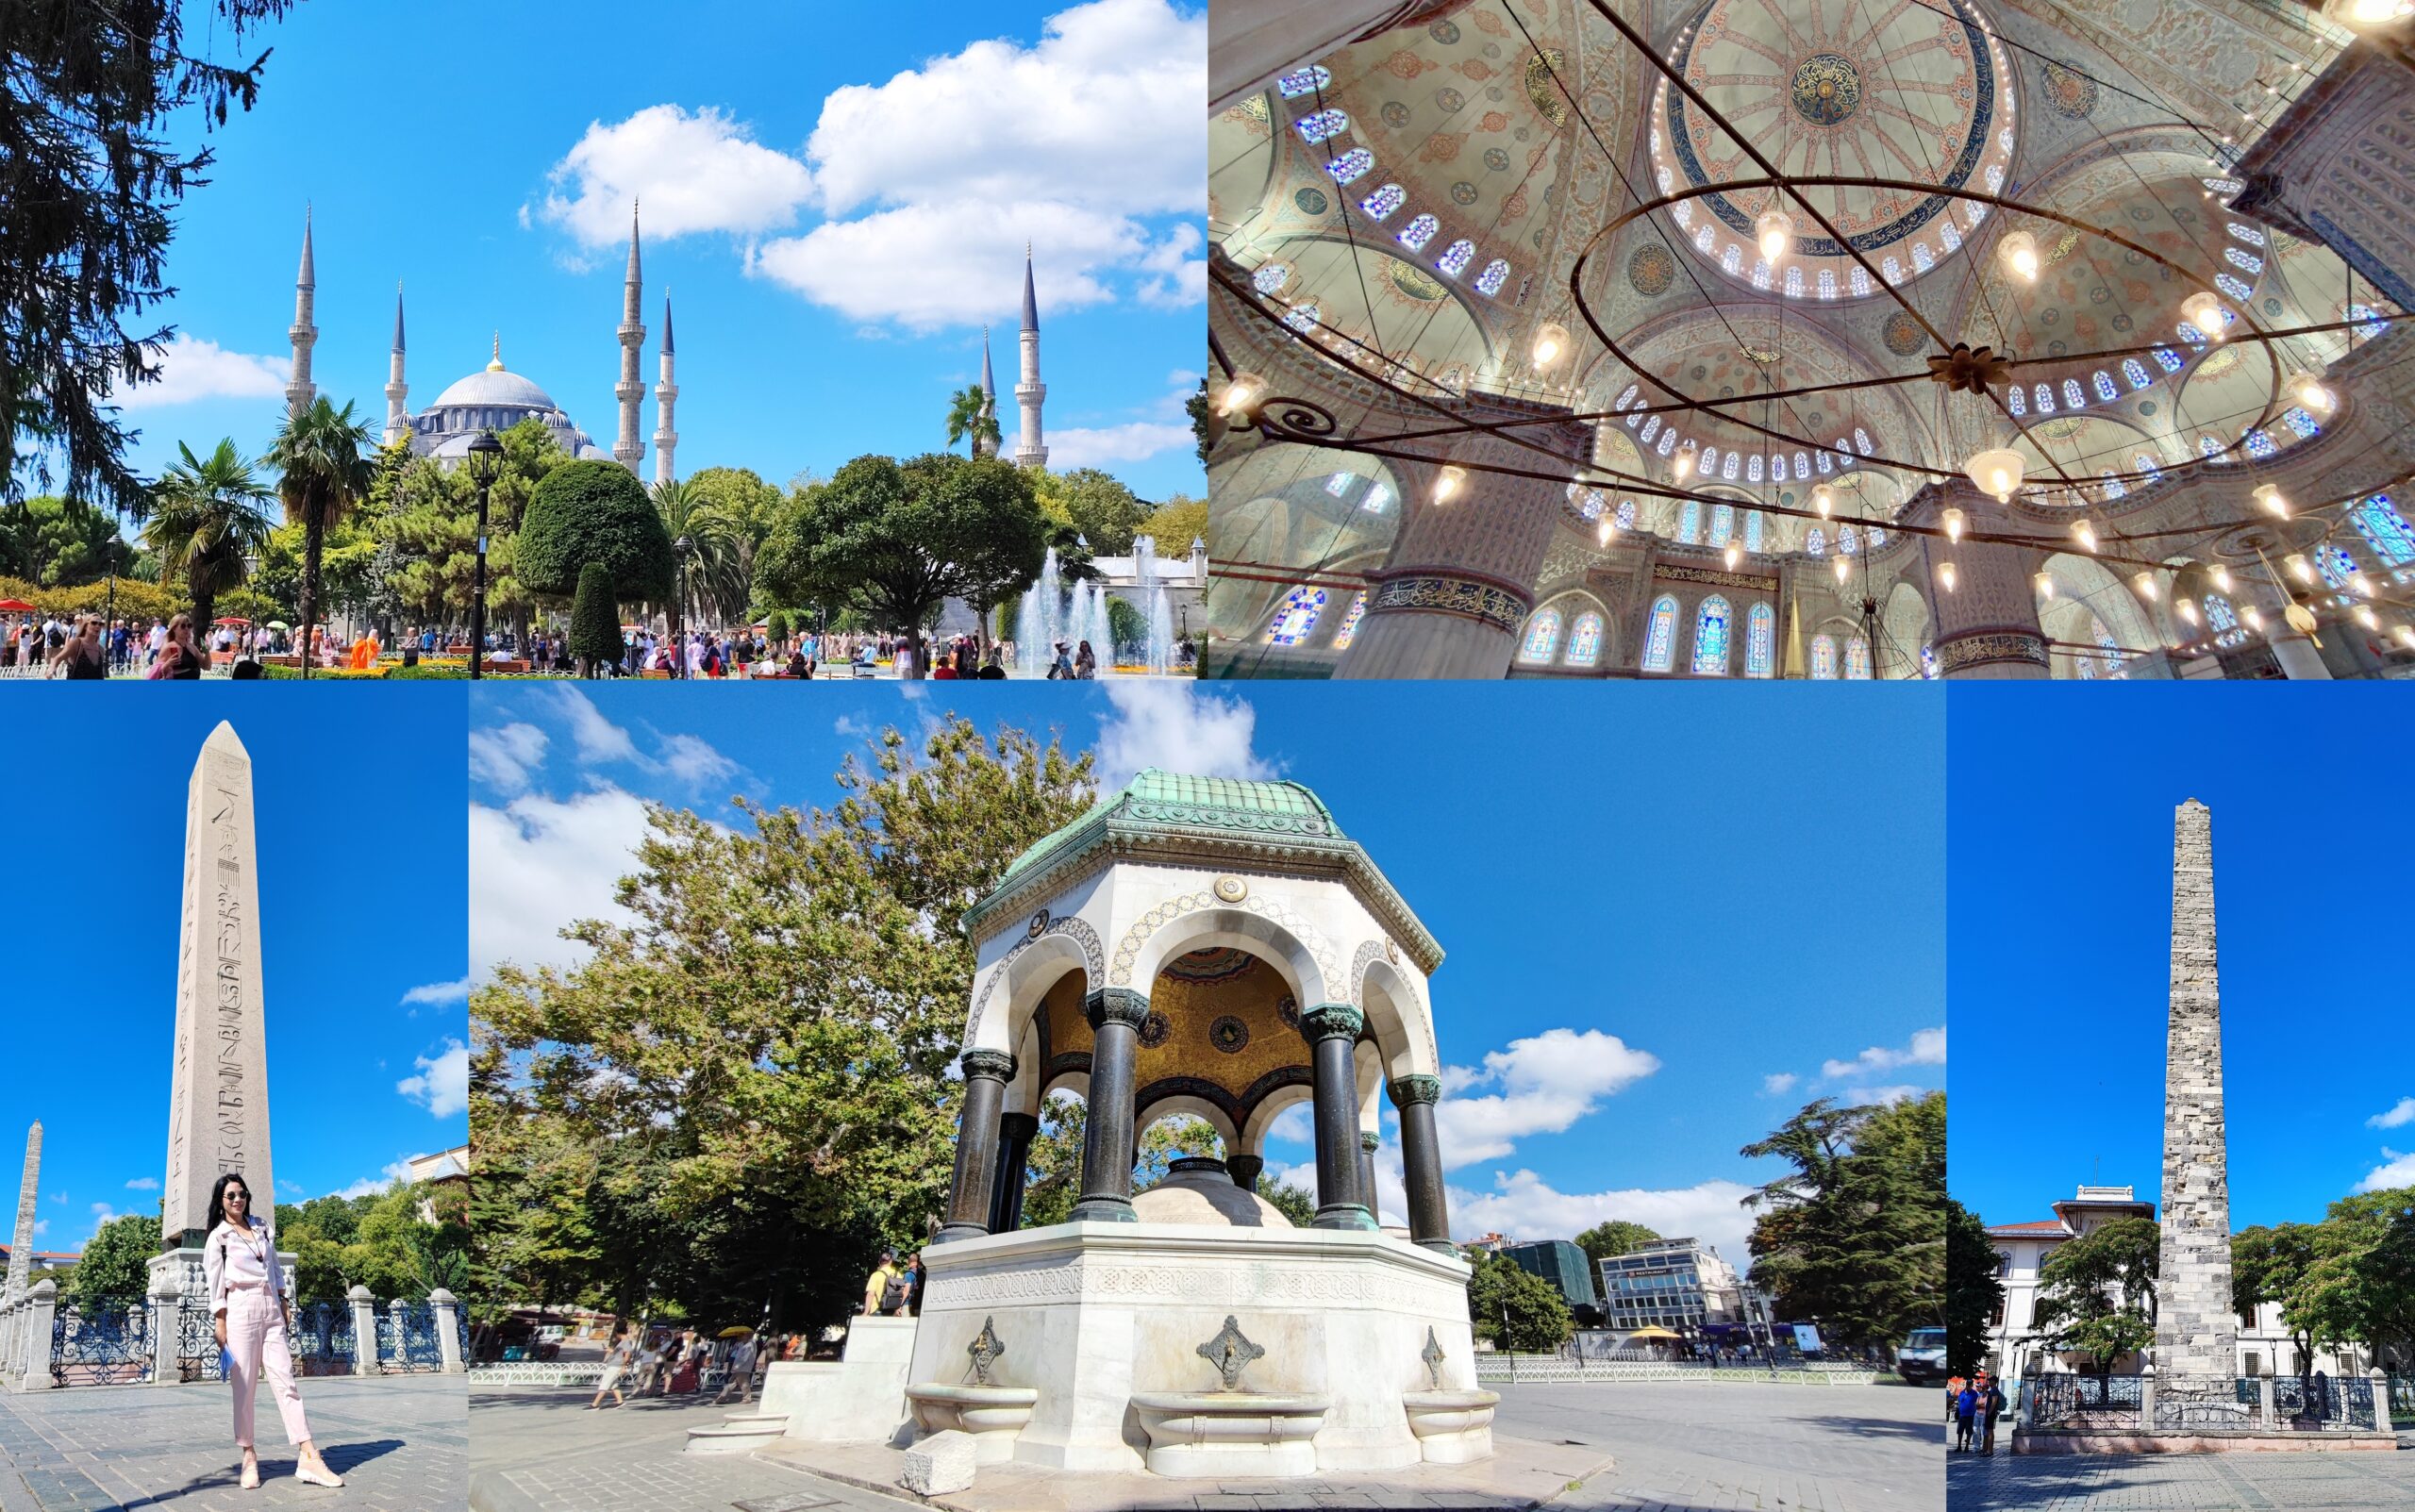 土耳其伊斯坦堡歷史半島區藍色清真寺及廣場